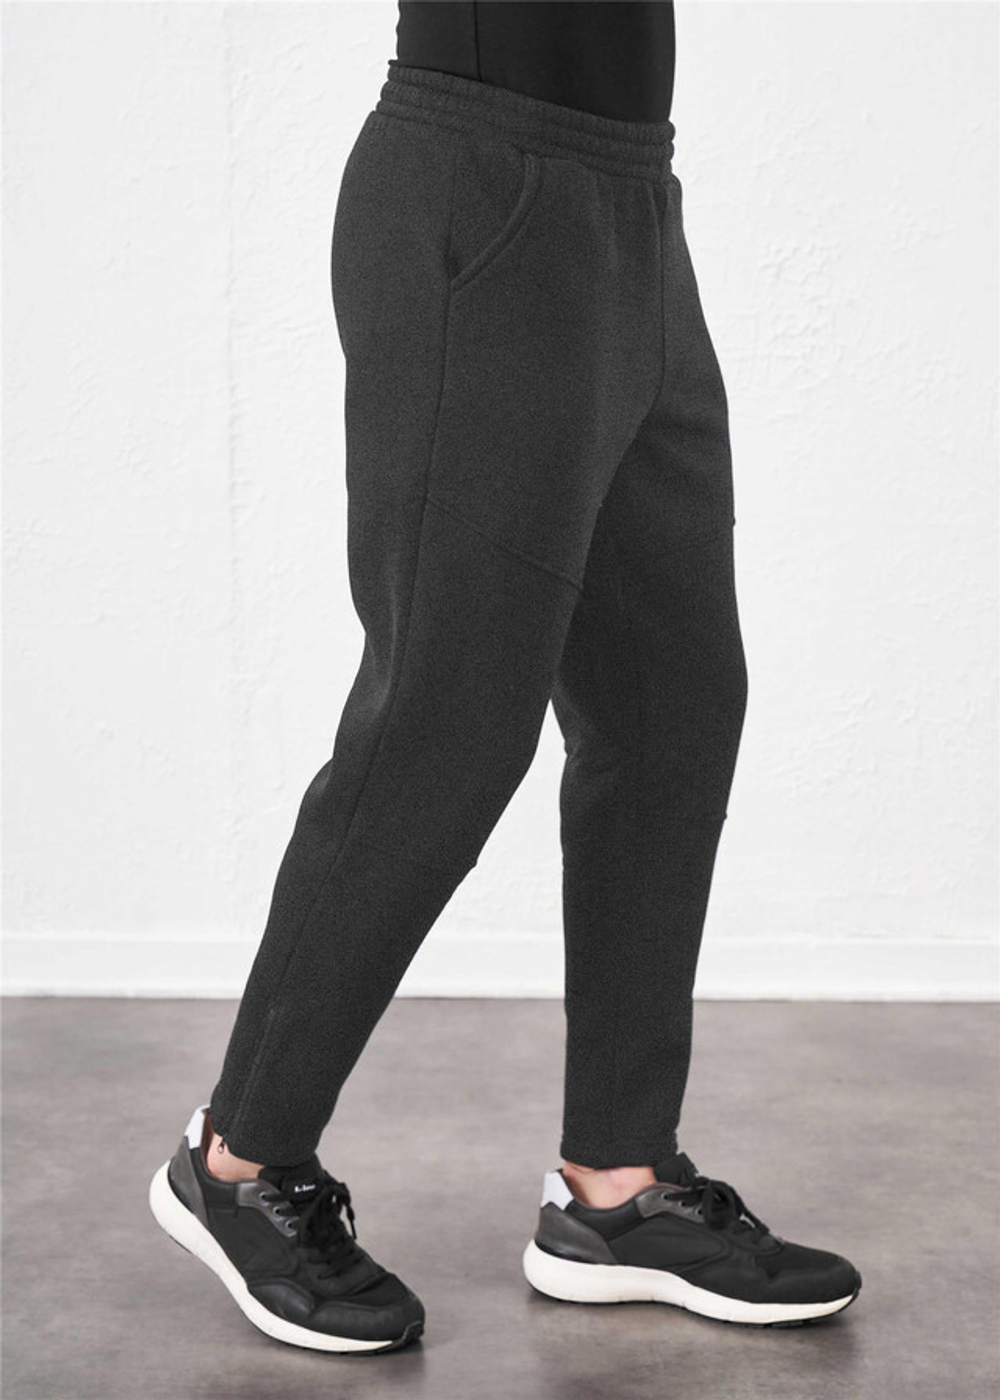 RELAX MODE / Спортивные штаны мужские утепленные с начесом зимние - 40071